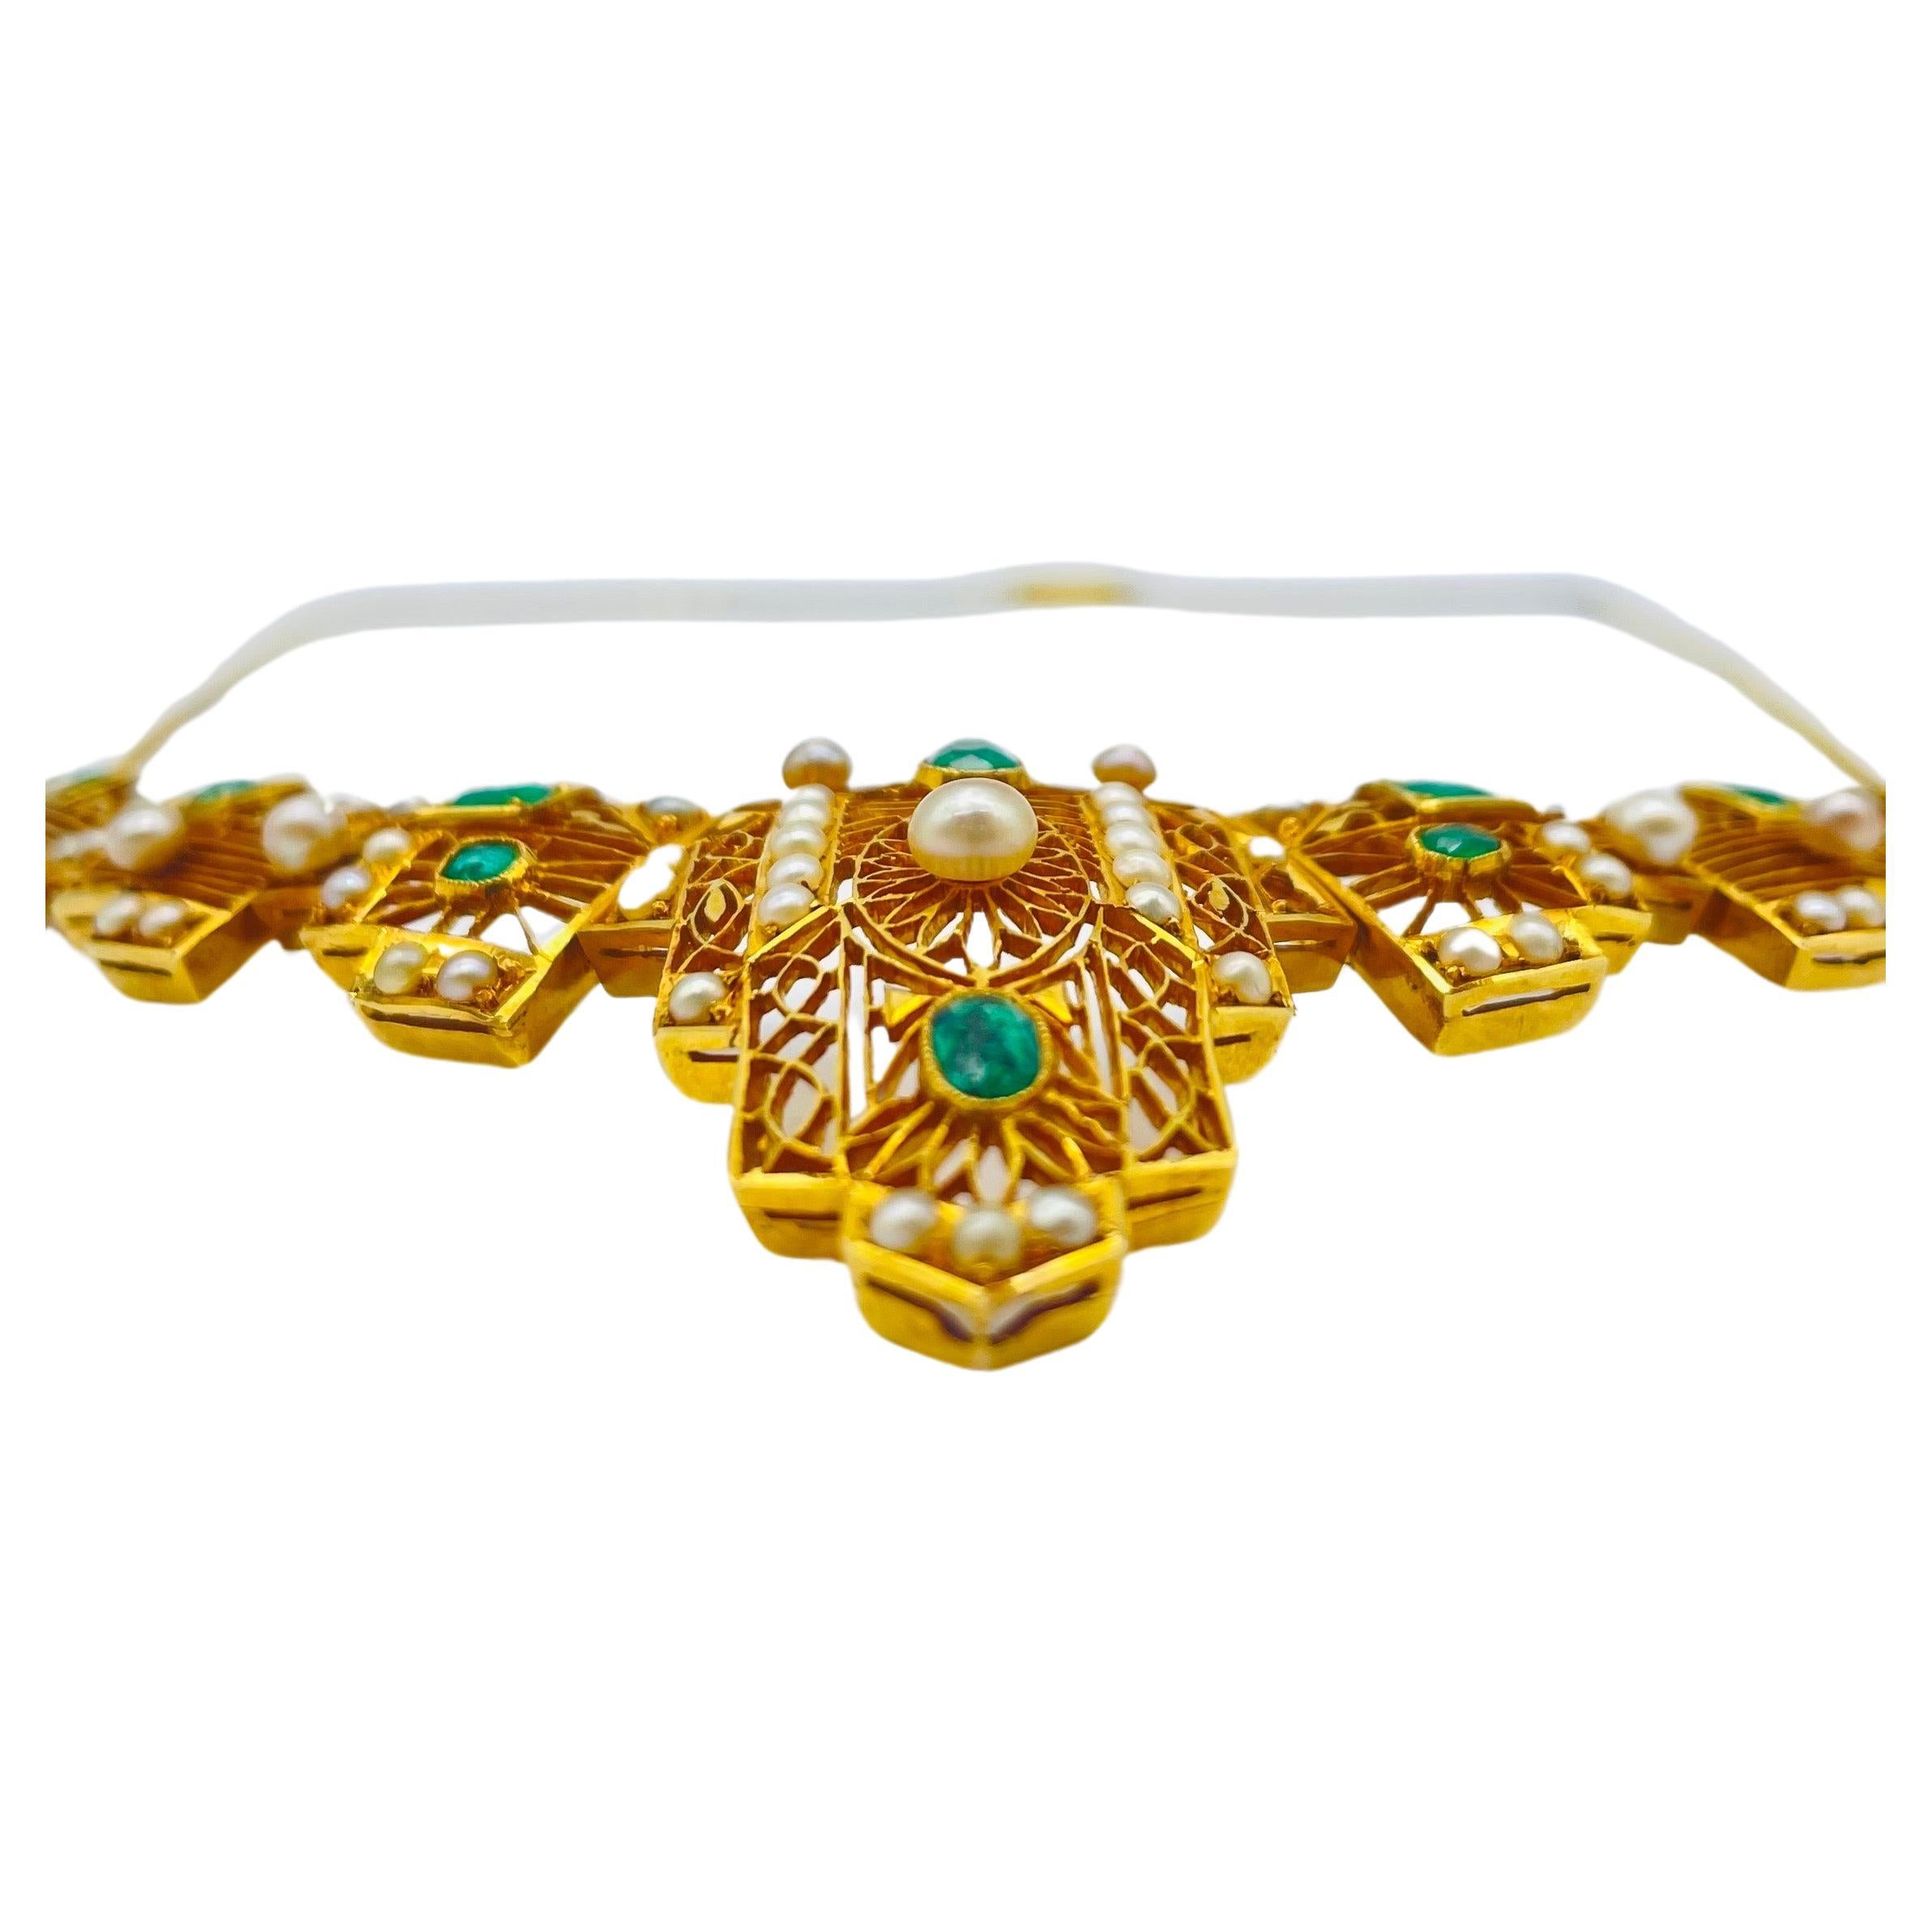 Begeben Sie sich auf eine traumhafte Reise mit dieser exquisiten Halskette aus 14-karätigem Gelbgold mit einem atemberaubenden Colli-Anhänger. Die filigrane Handwerkskunst dieses schönen Colli ist eine Hommage an den Art-déco-Stil. Die filigranen